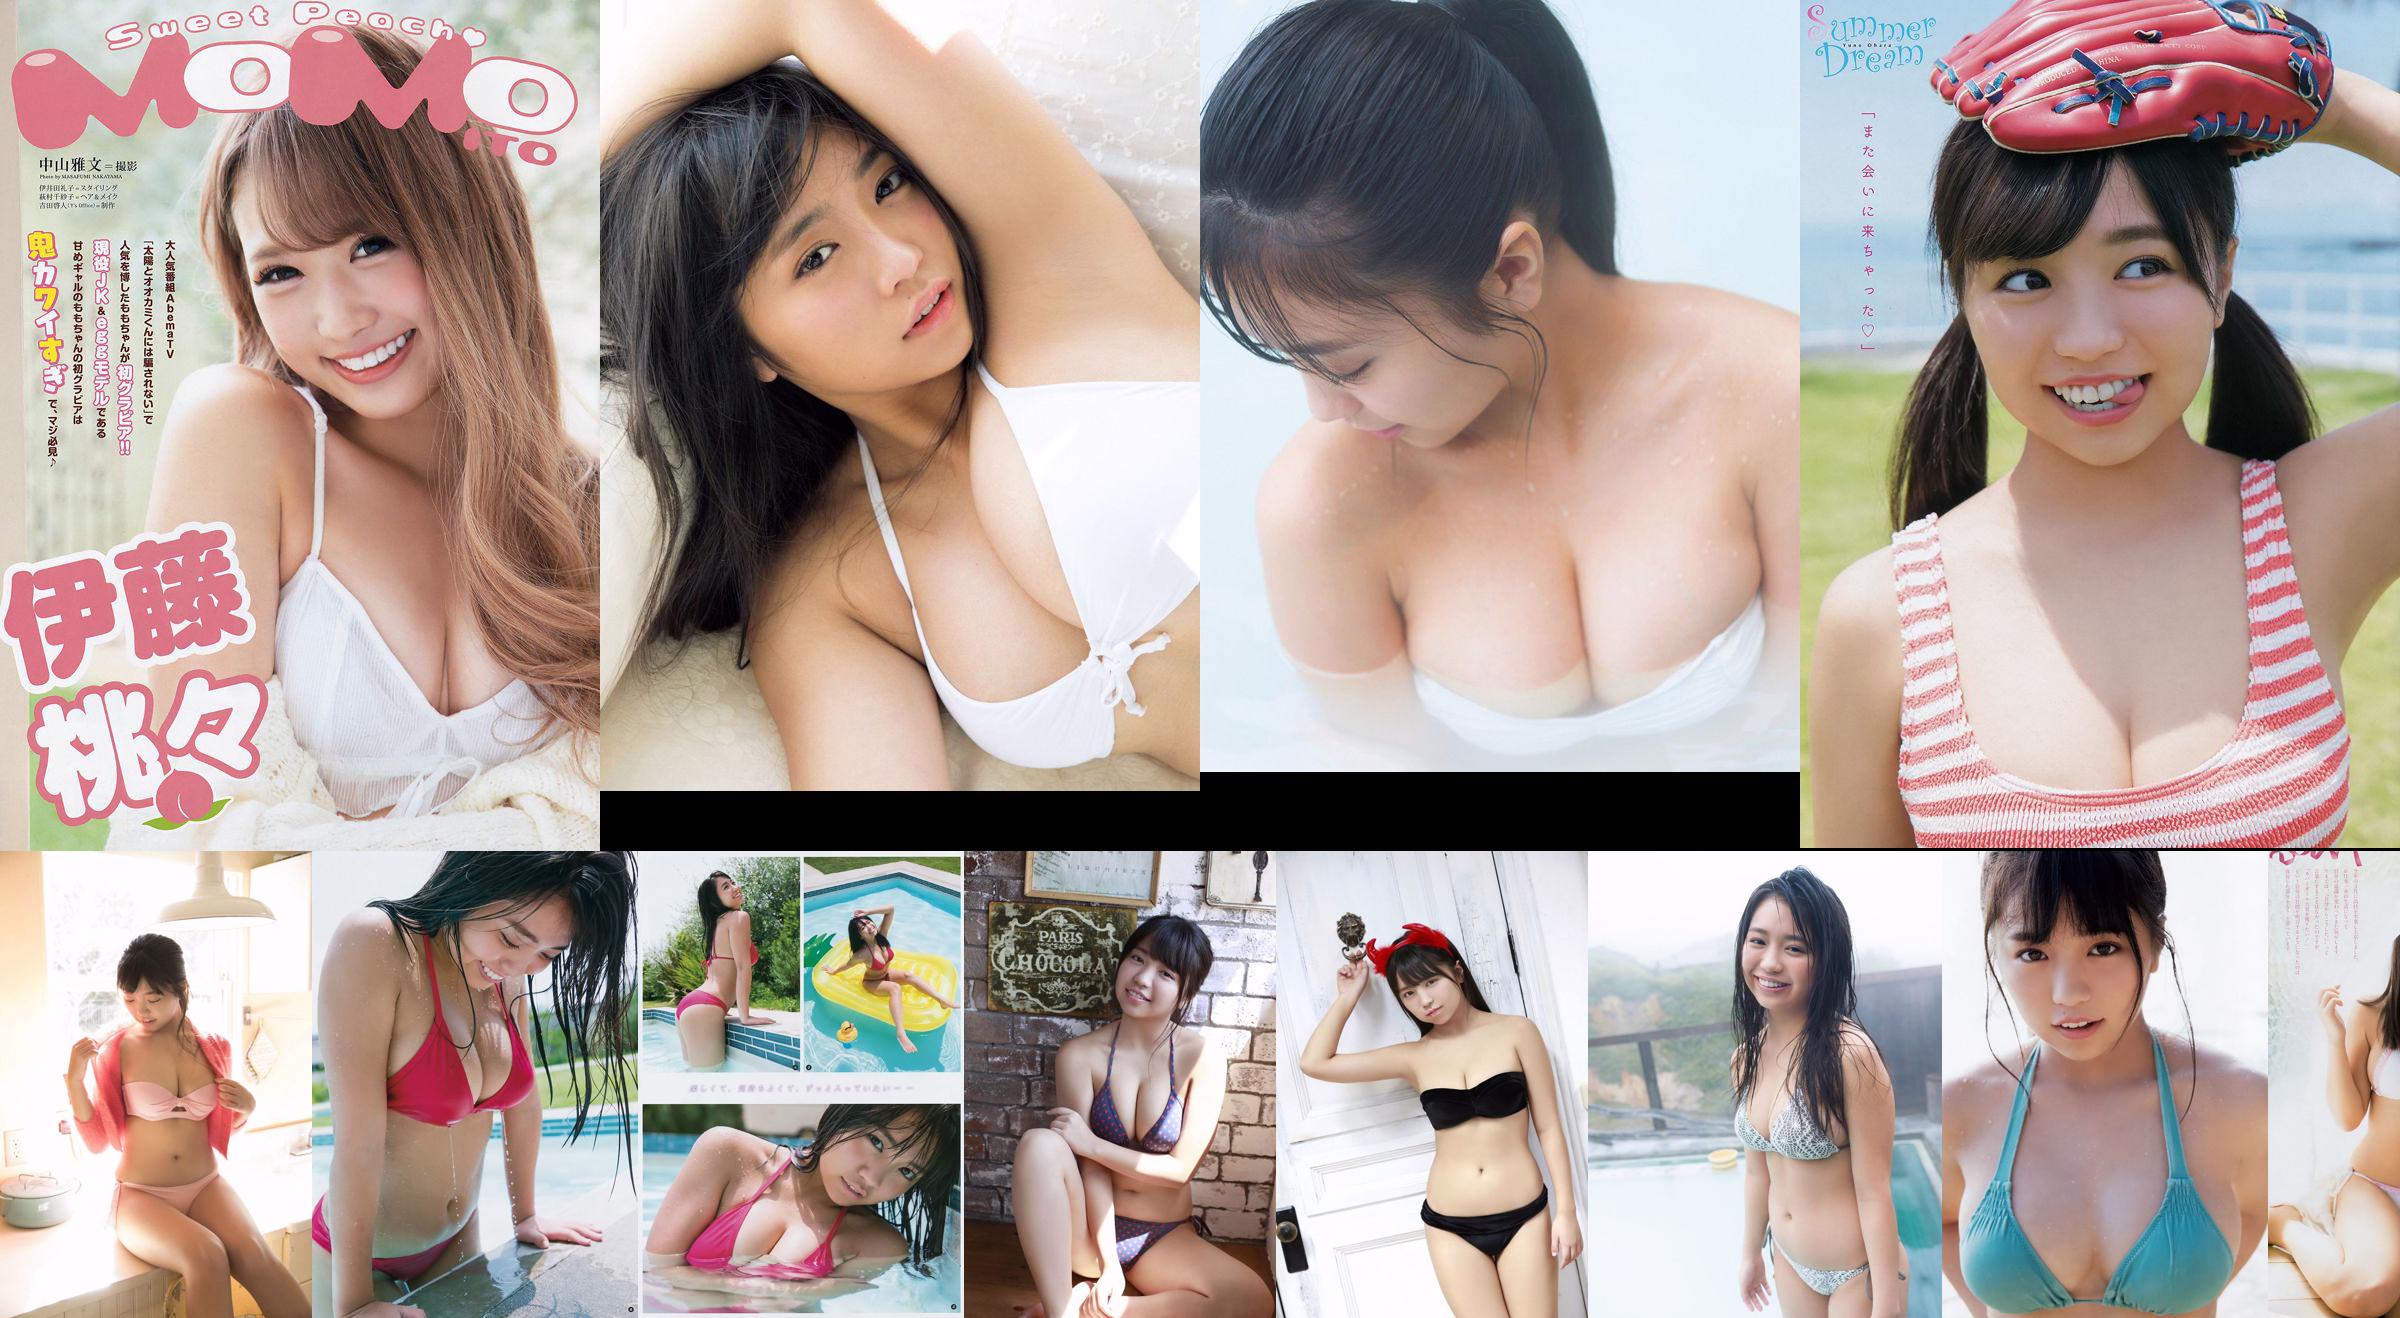 Yuno Ohara Miona Hori Nana Kato Miki Sato [Weekly Playboy] 2017 No.49 Foto Mori No.221548 Pagina 17